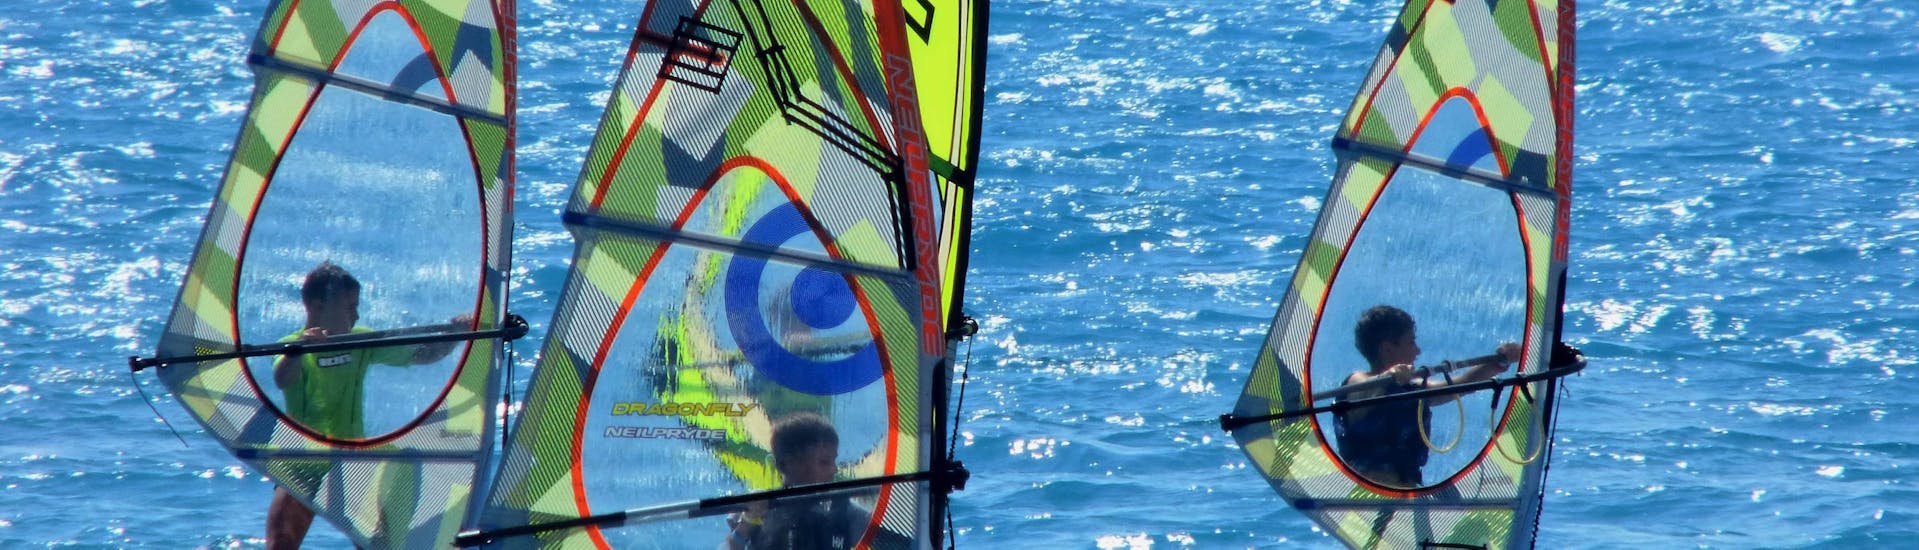 Lezioni di windsurf per bambini e adulti - principianti con Windsurfers' World Rhodes